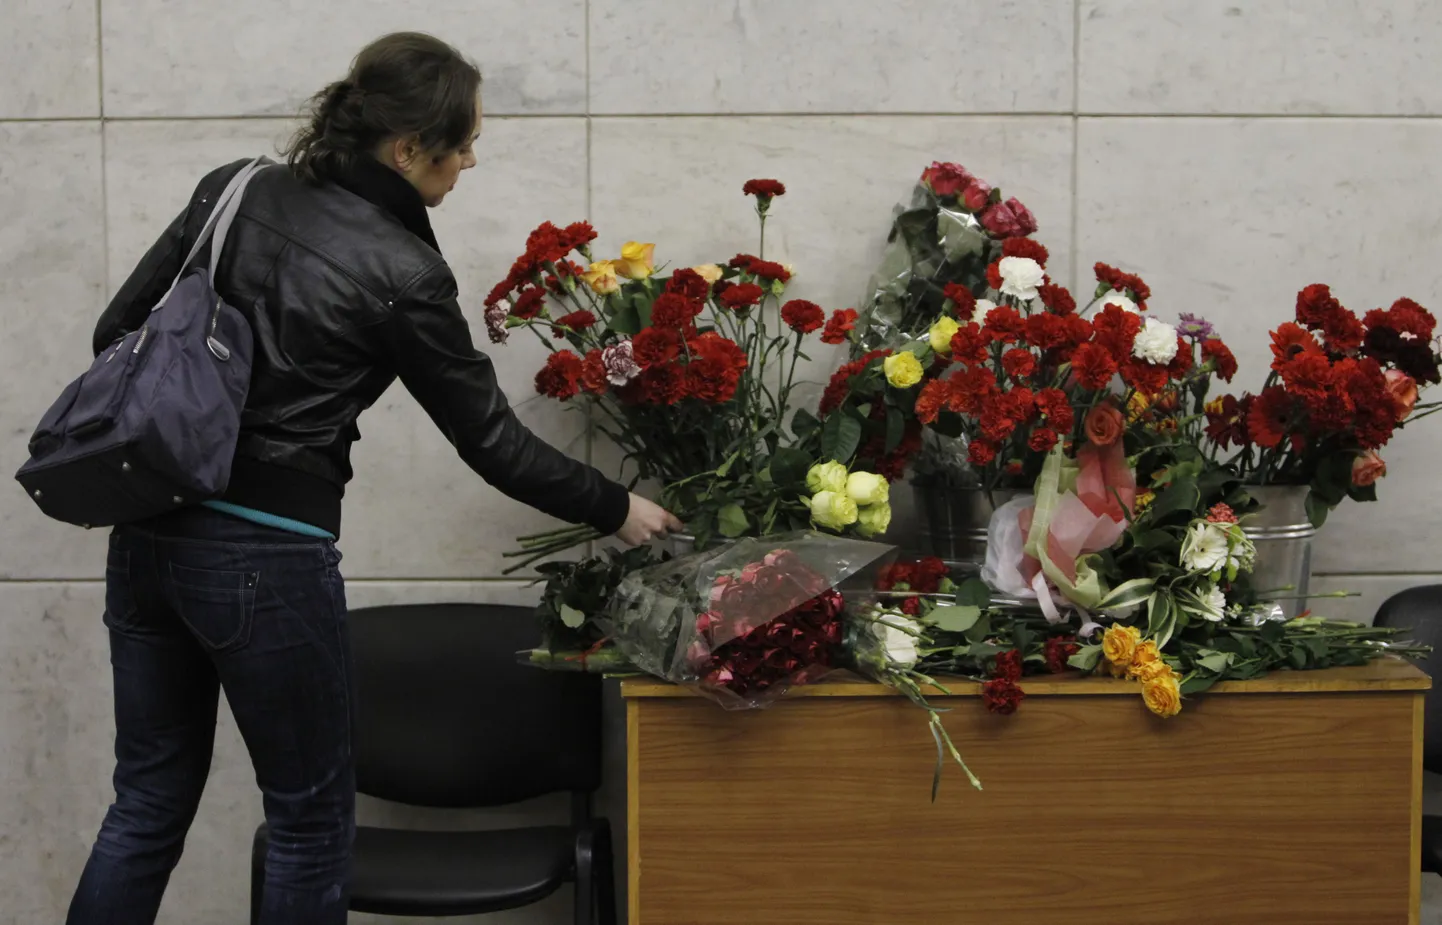 Стол с цветами в память о погибших на станции метро "Лубянка".